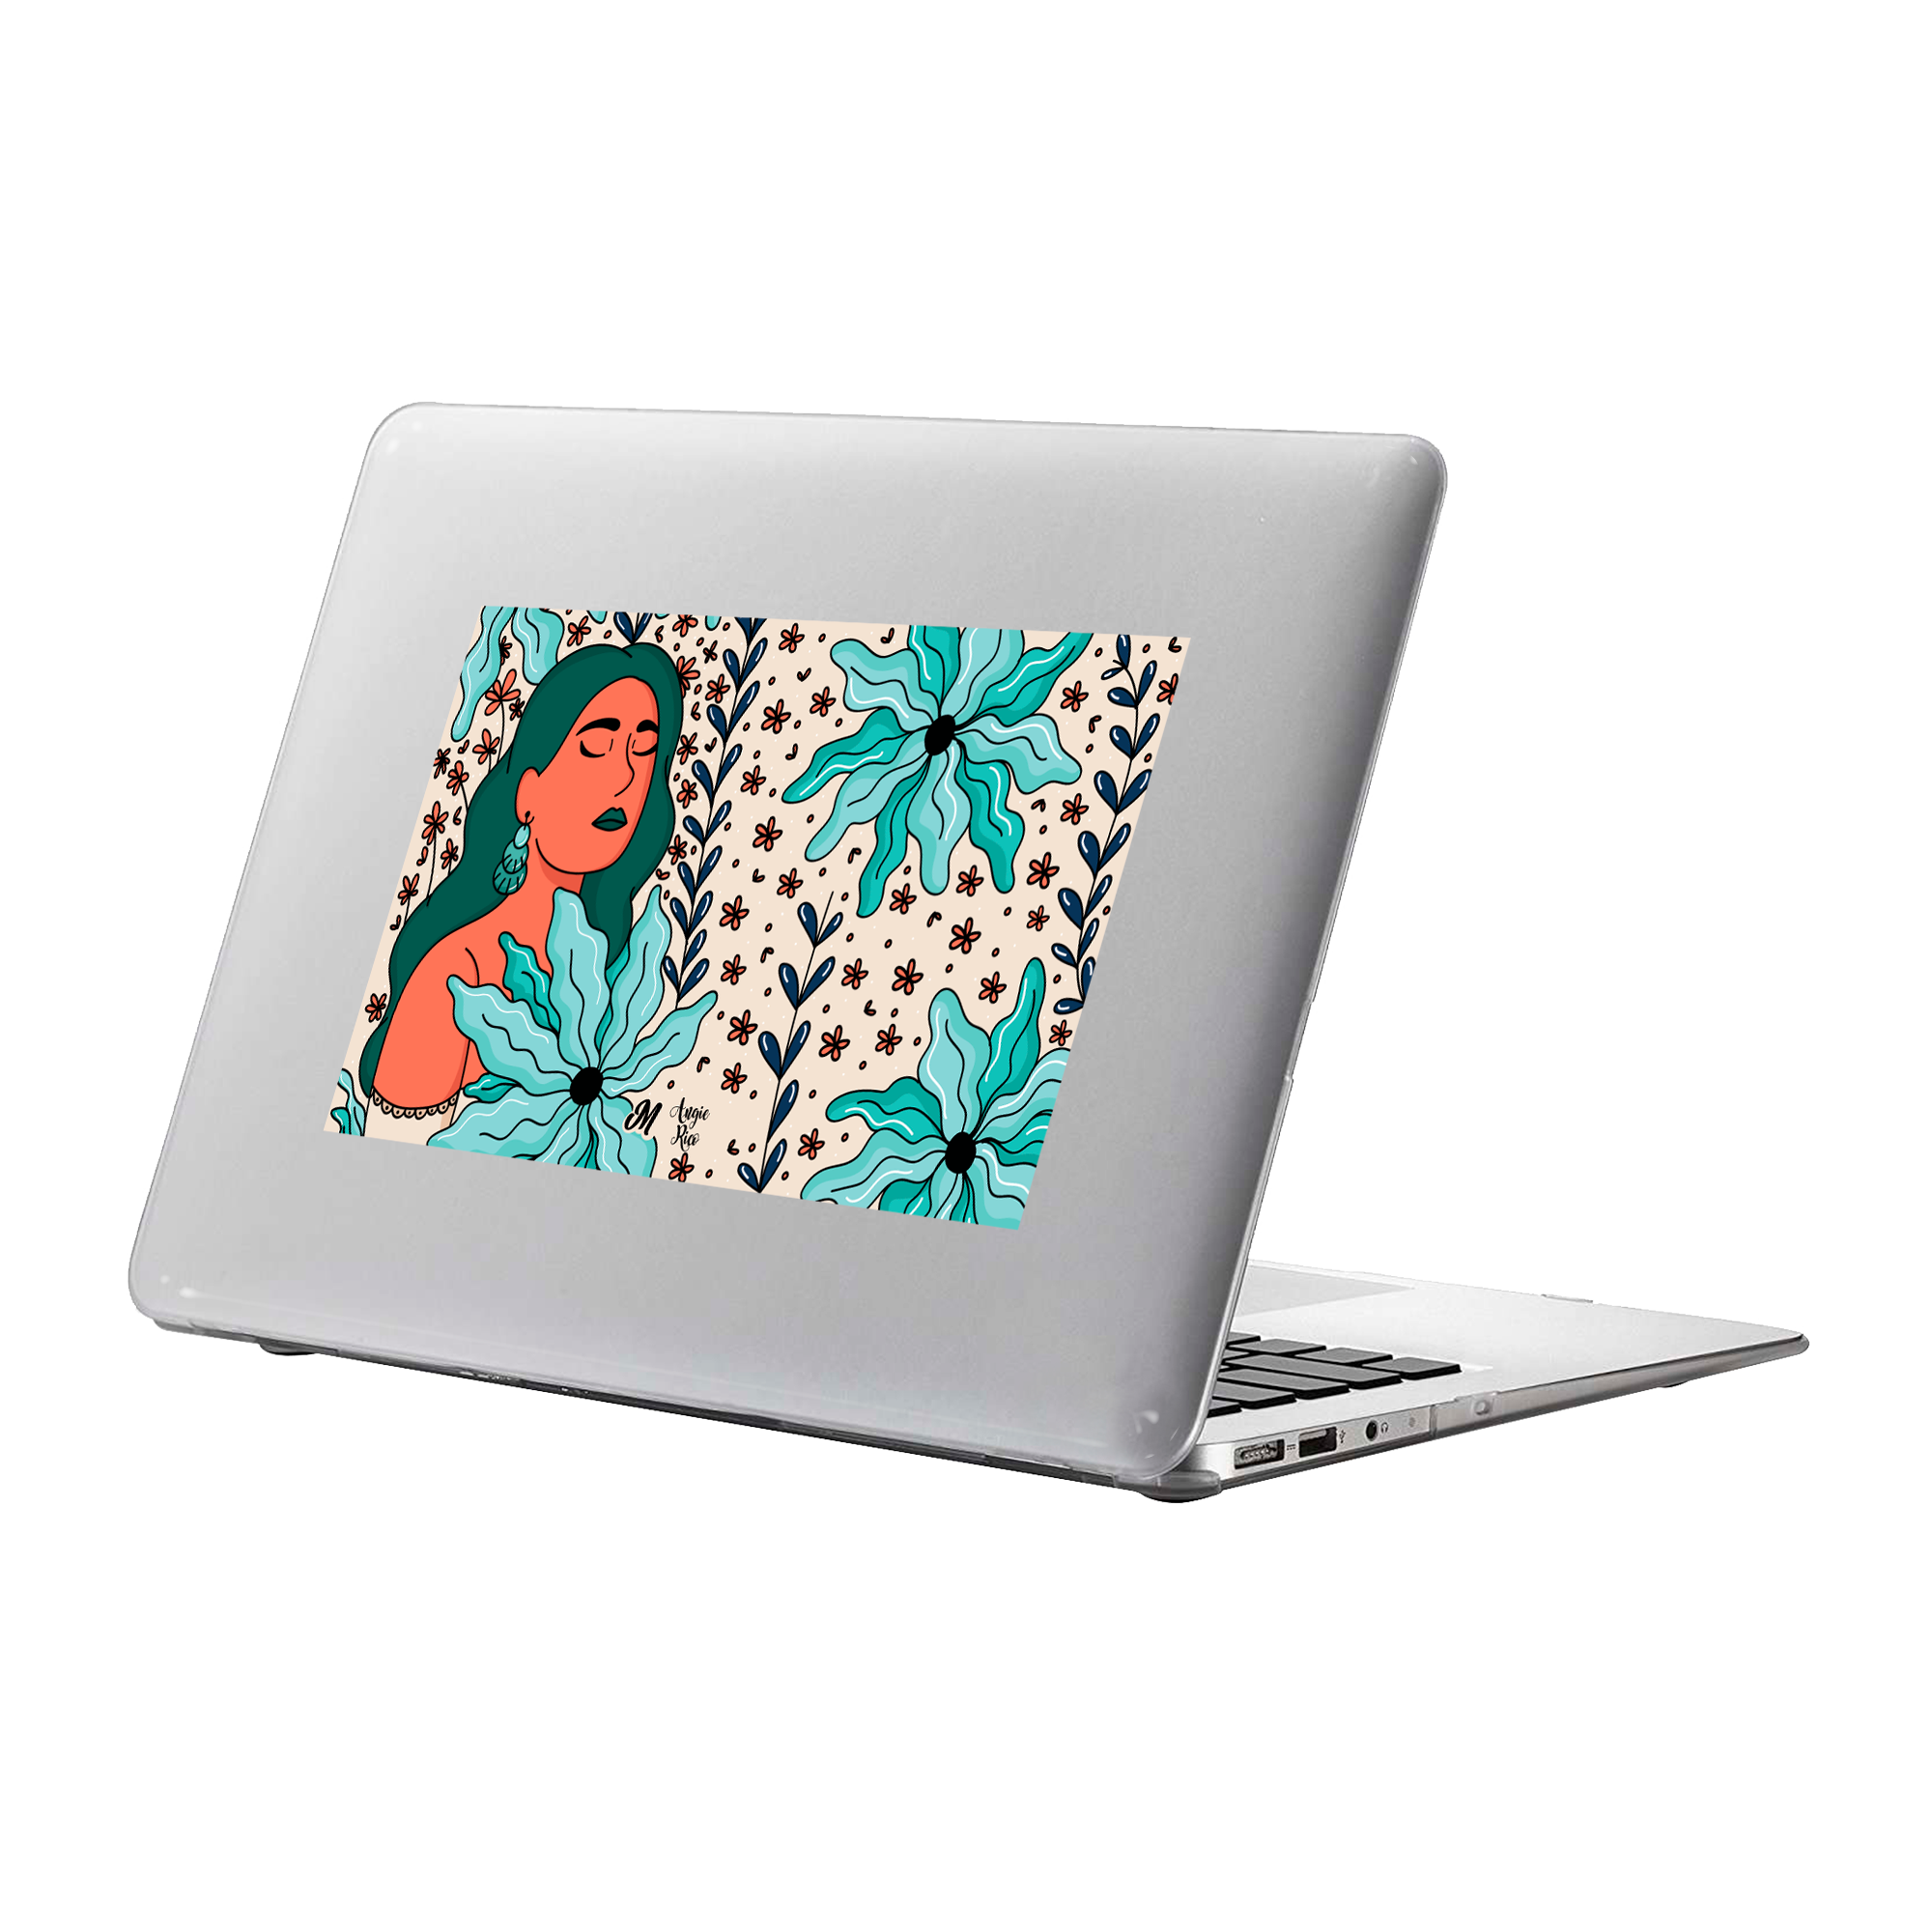 Fresca Naturaleza MacBook Case - Mandala Cases